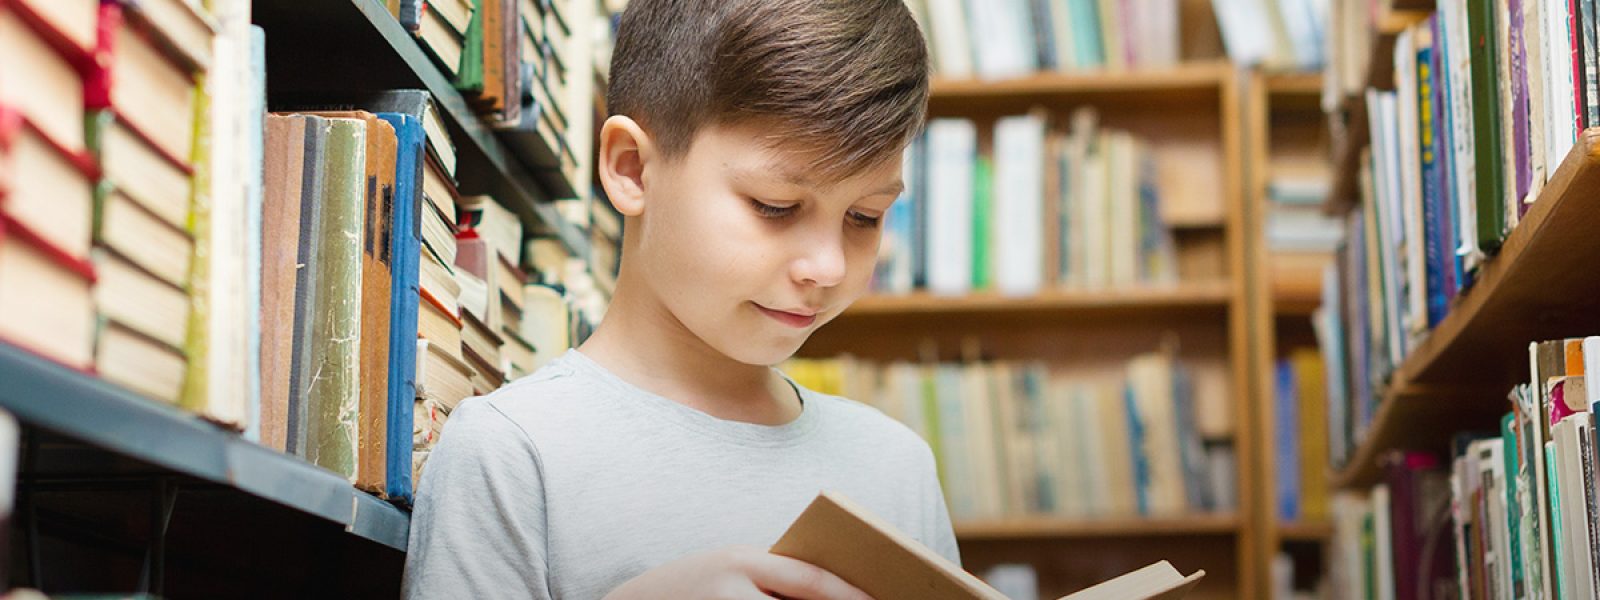 Cinco mitos sobre a leitura na infância que você precisa saber